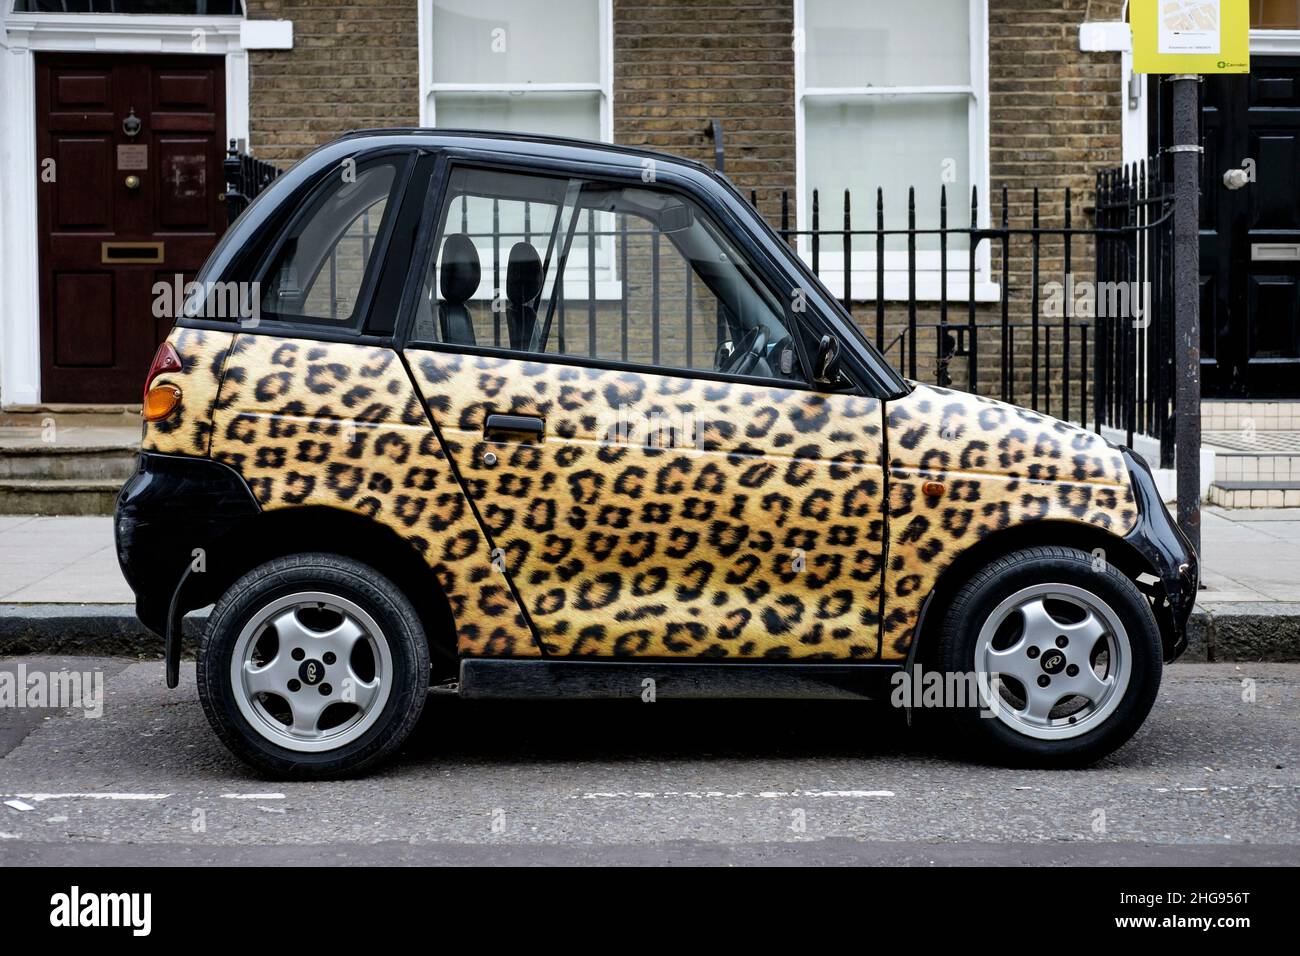 Ein Reva G-Wiz Elektroauto mit Leopardendruck-Design-Verkleidung, geparkt auf der Straße, London, Großbritannien Stockfoto